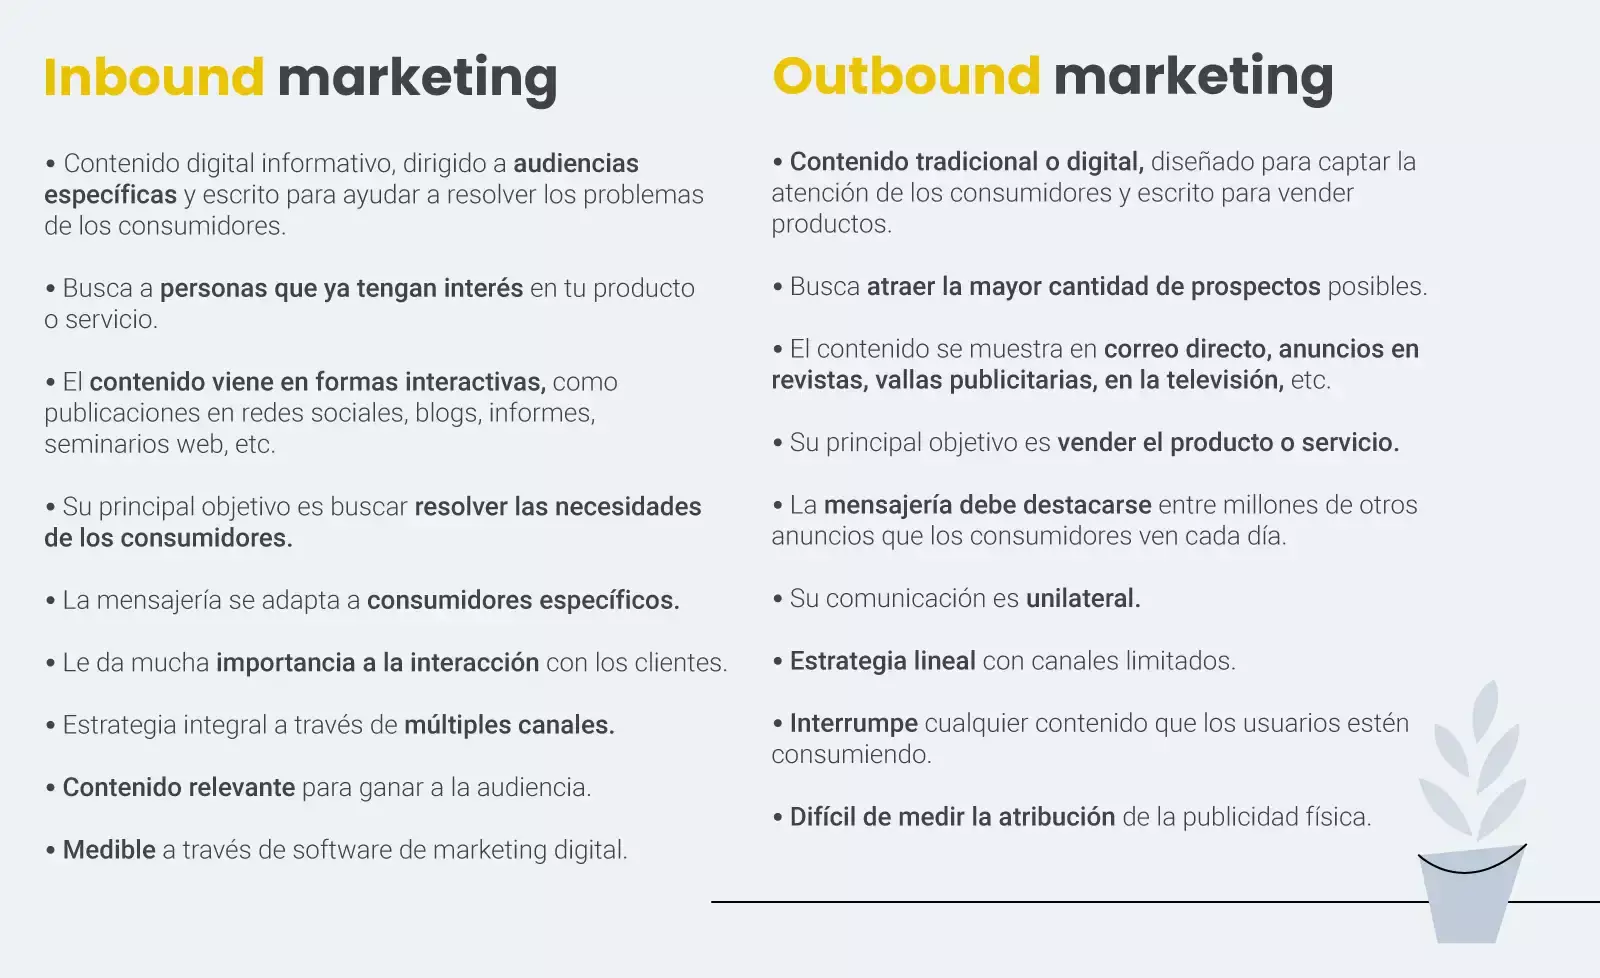 Diferencias entre outbound e inbound marketing